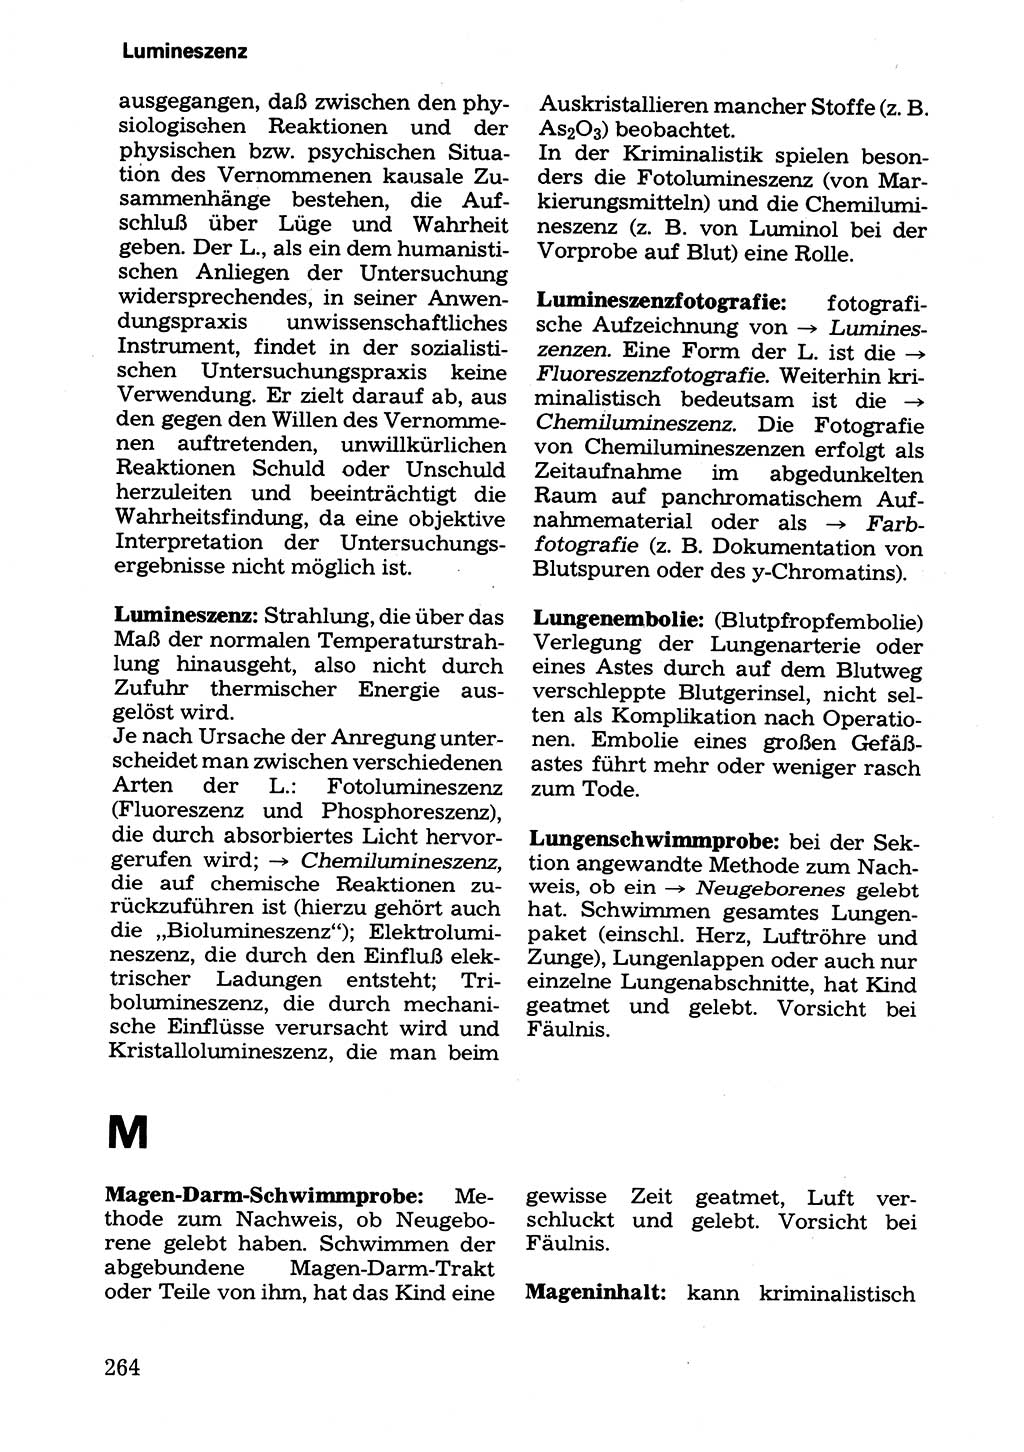 Wörterbuch der sozialistischen Kriminalistik [Deutsche Demokratische Republik (DDR)] 1981, Seite 264 (Wb. soz. Krim. DDR 1981, S. 264)